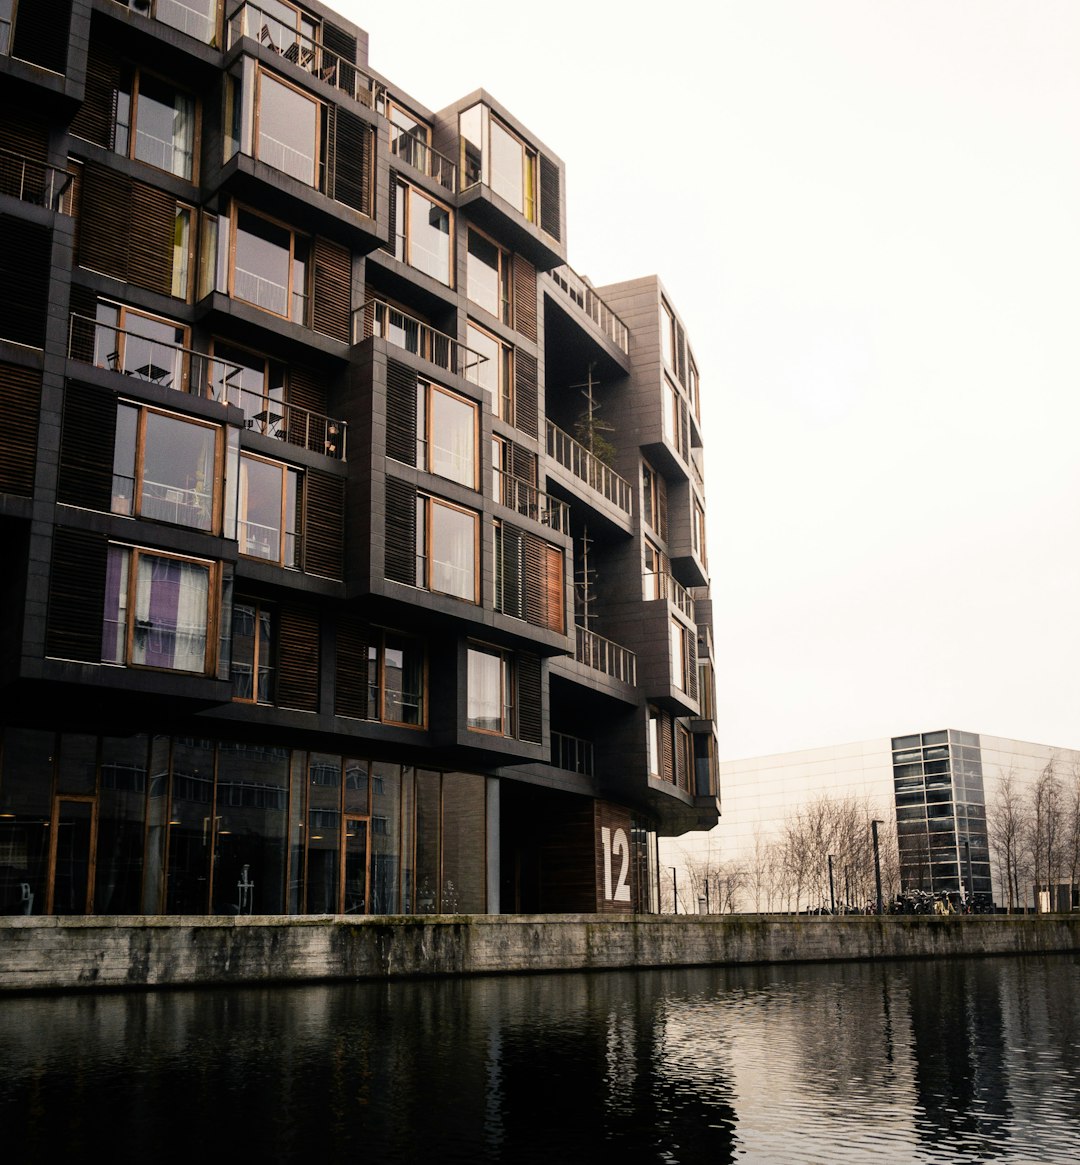 Waterway photo spot Rued Langgaards Vej 10 Nyhavn